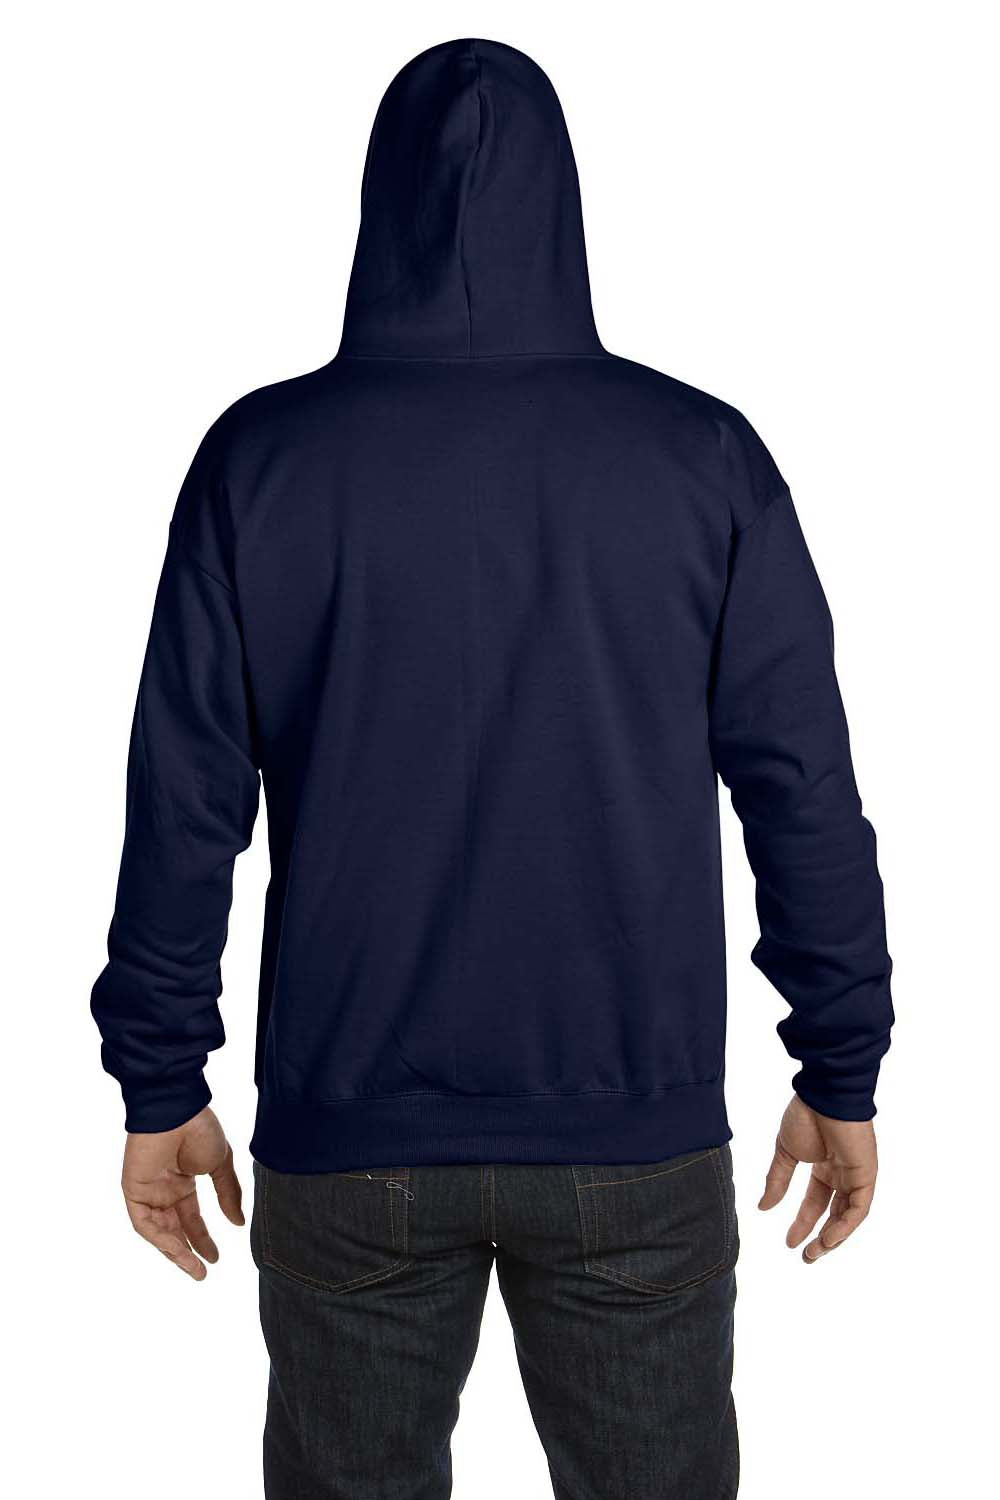 Hanes P180 Mens EcoSmart Print Pro XP Full Zip Hooded Sweatshirt Hoodie Navy Blue Back